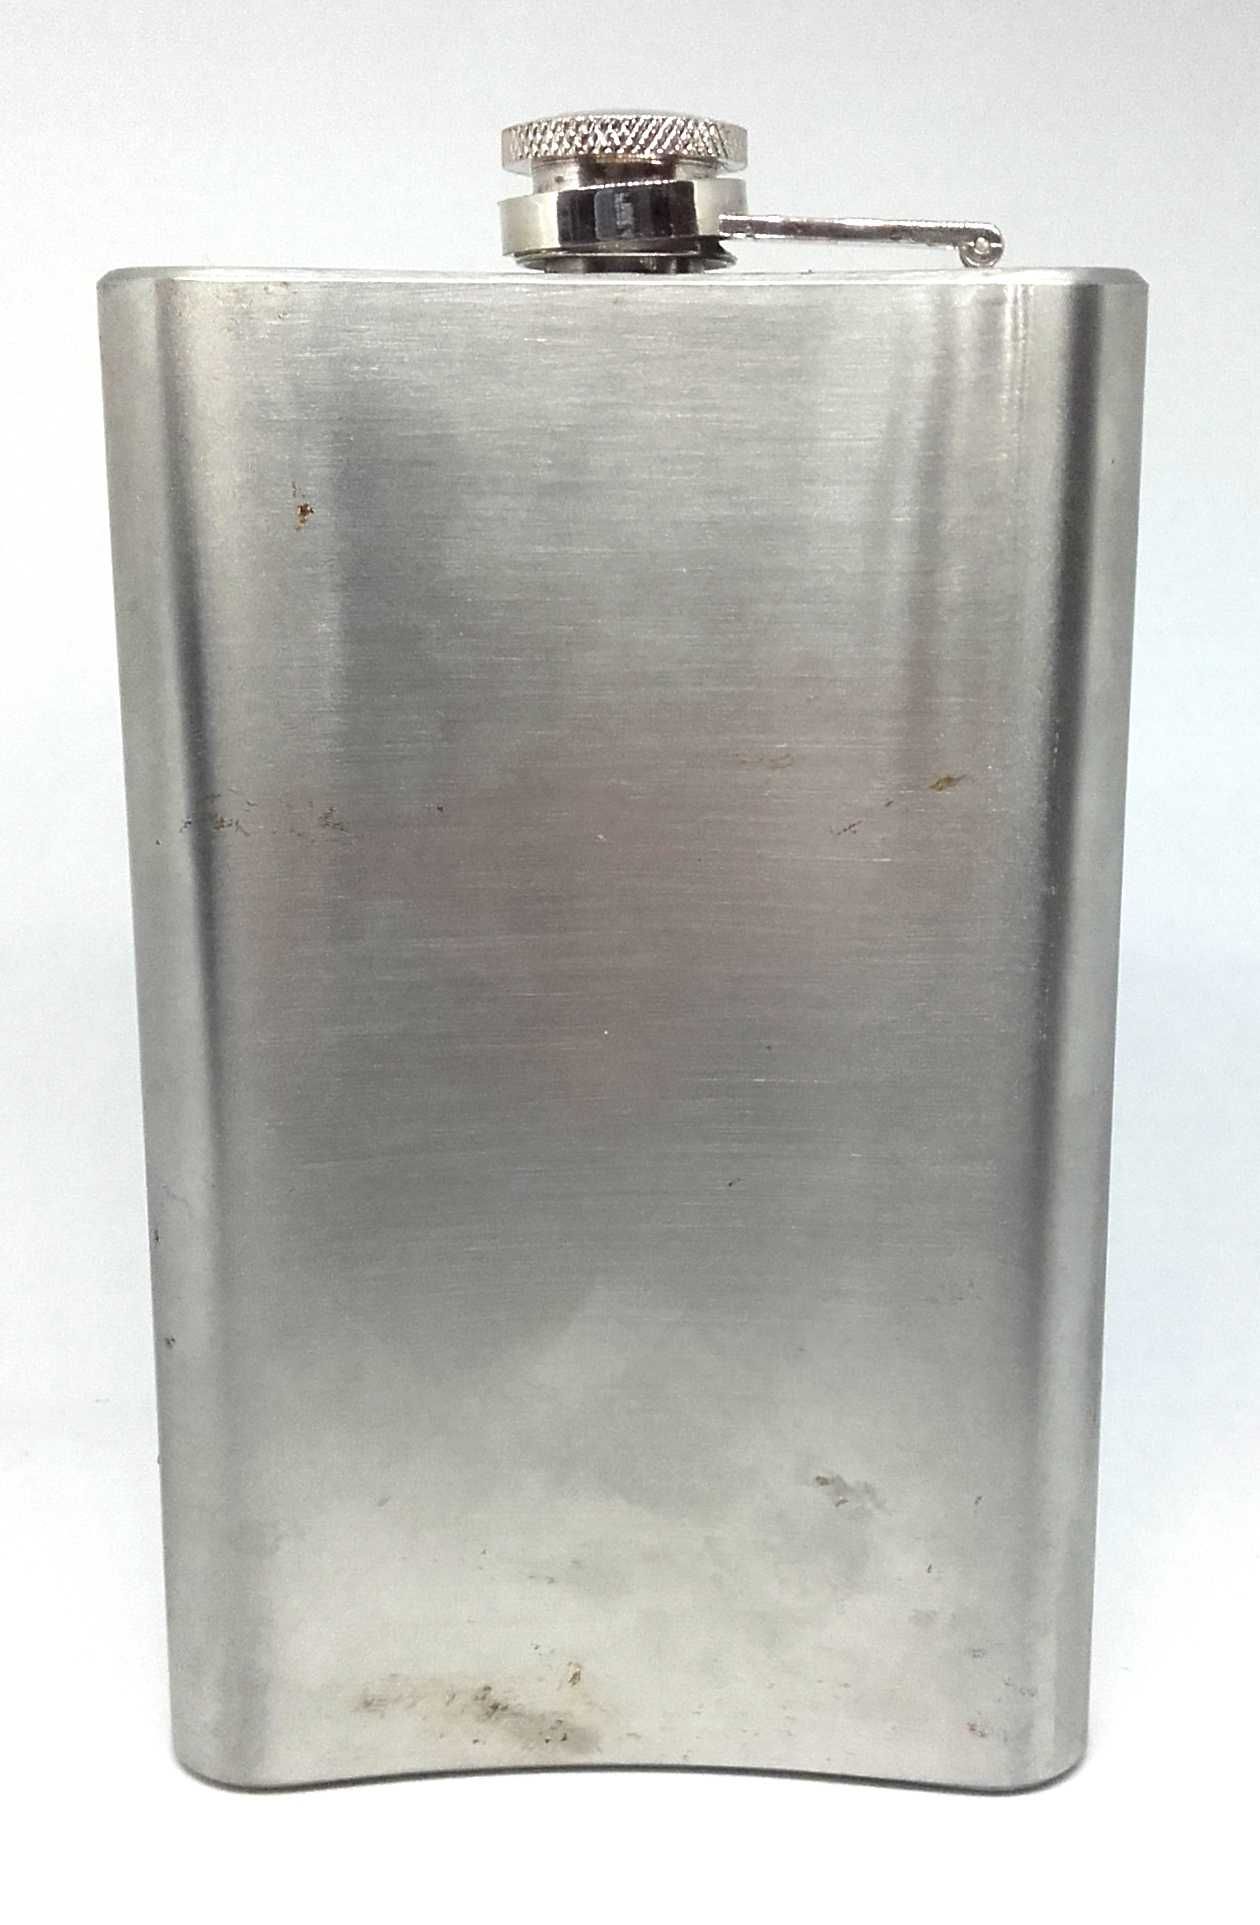 Piersiówka srebrna stainless steel 10 oz flaszka manierka małpka